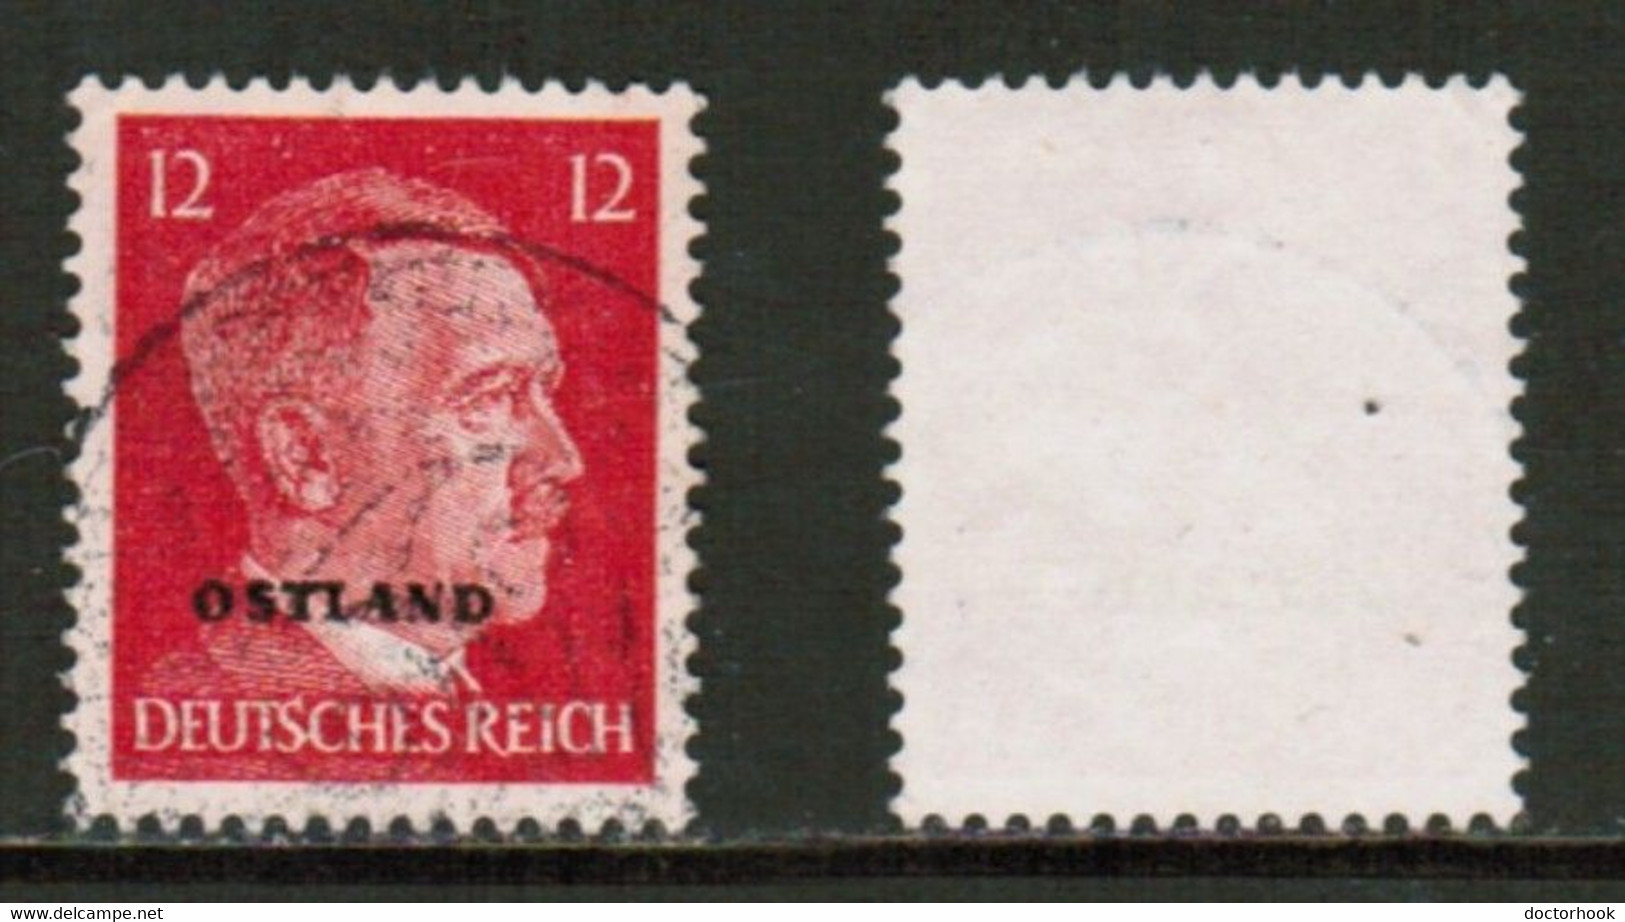 RUSSIA---German Occupation   Scott # N 16 USED (CONDITION AS PER SCAN) (Stamp Scan # 847-6) - 1941-43 Deutsche Besatzung